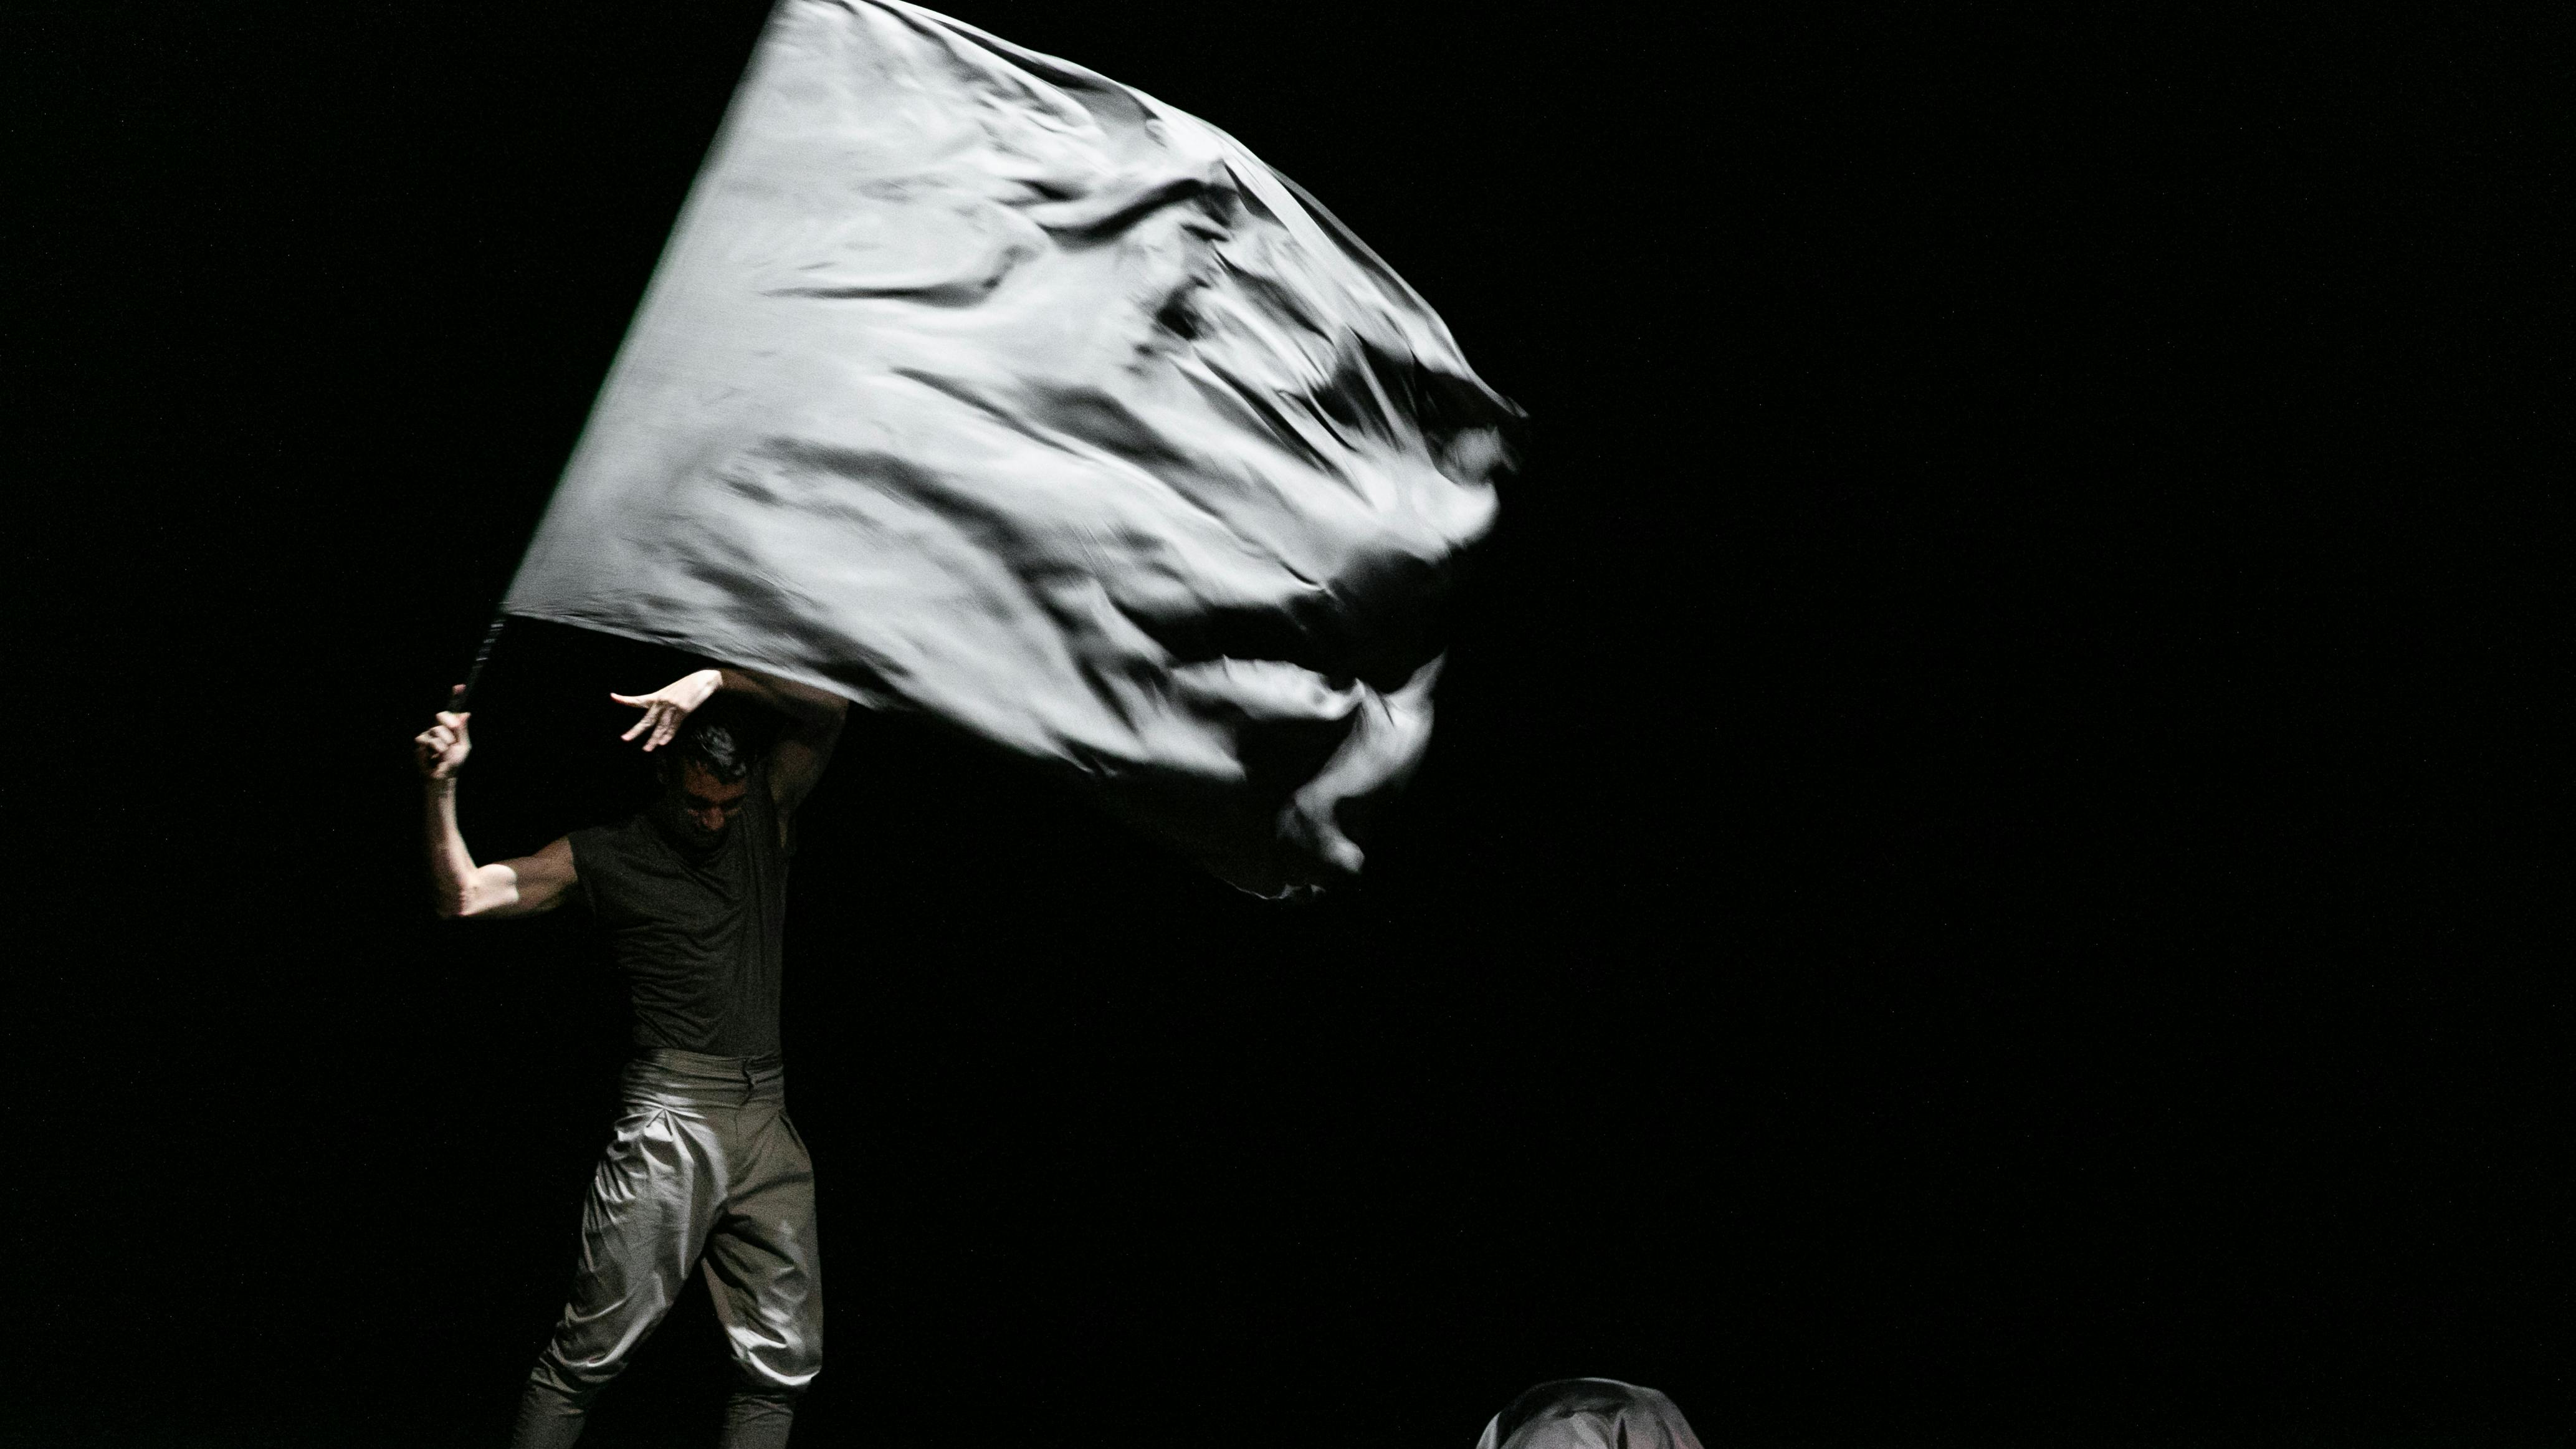 L'artista si esibisce sul palco indossando vestiti scuri e facendo sventolare una bandiera grigia